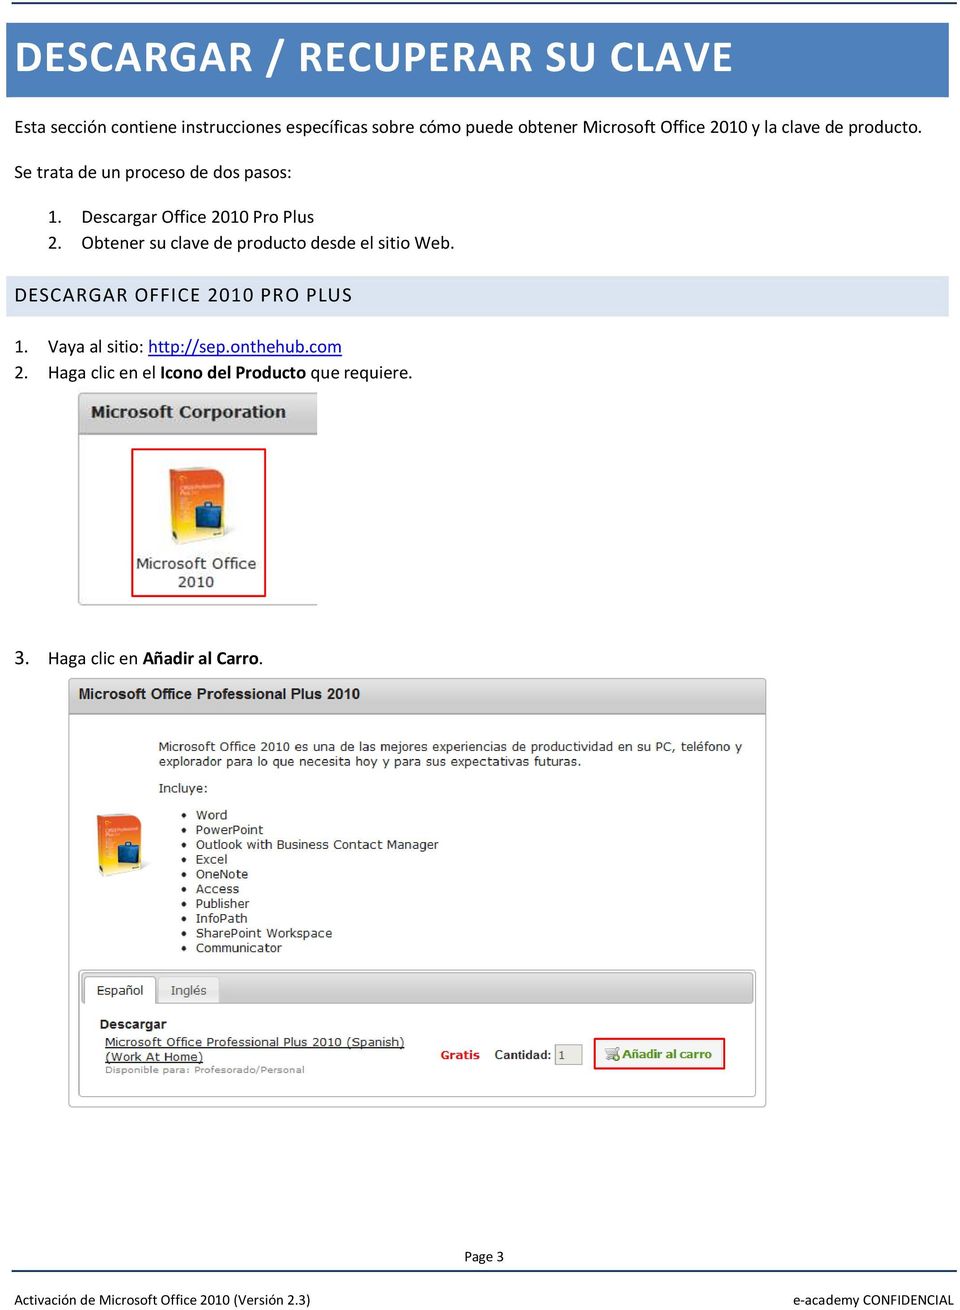 Descargar Office 2010 Pro Plus 2. Obtener su clave de producto desde el sitio Web.